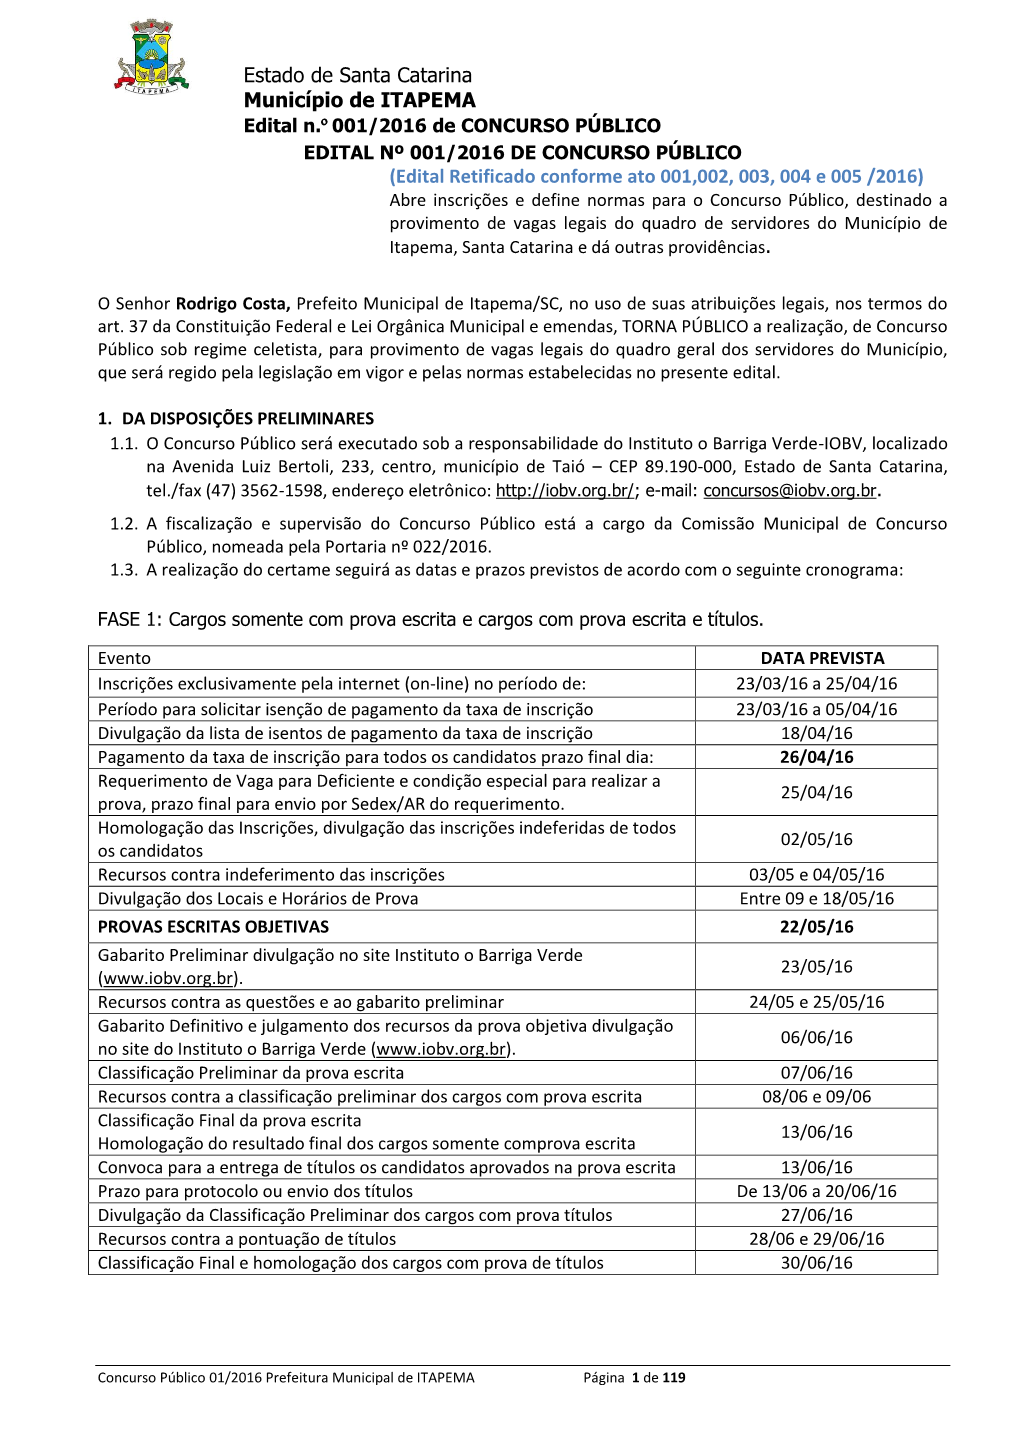 Estado De Santa Catarina Município De ITAPEMA (Edital Retificado